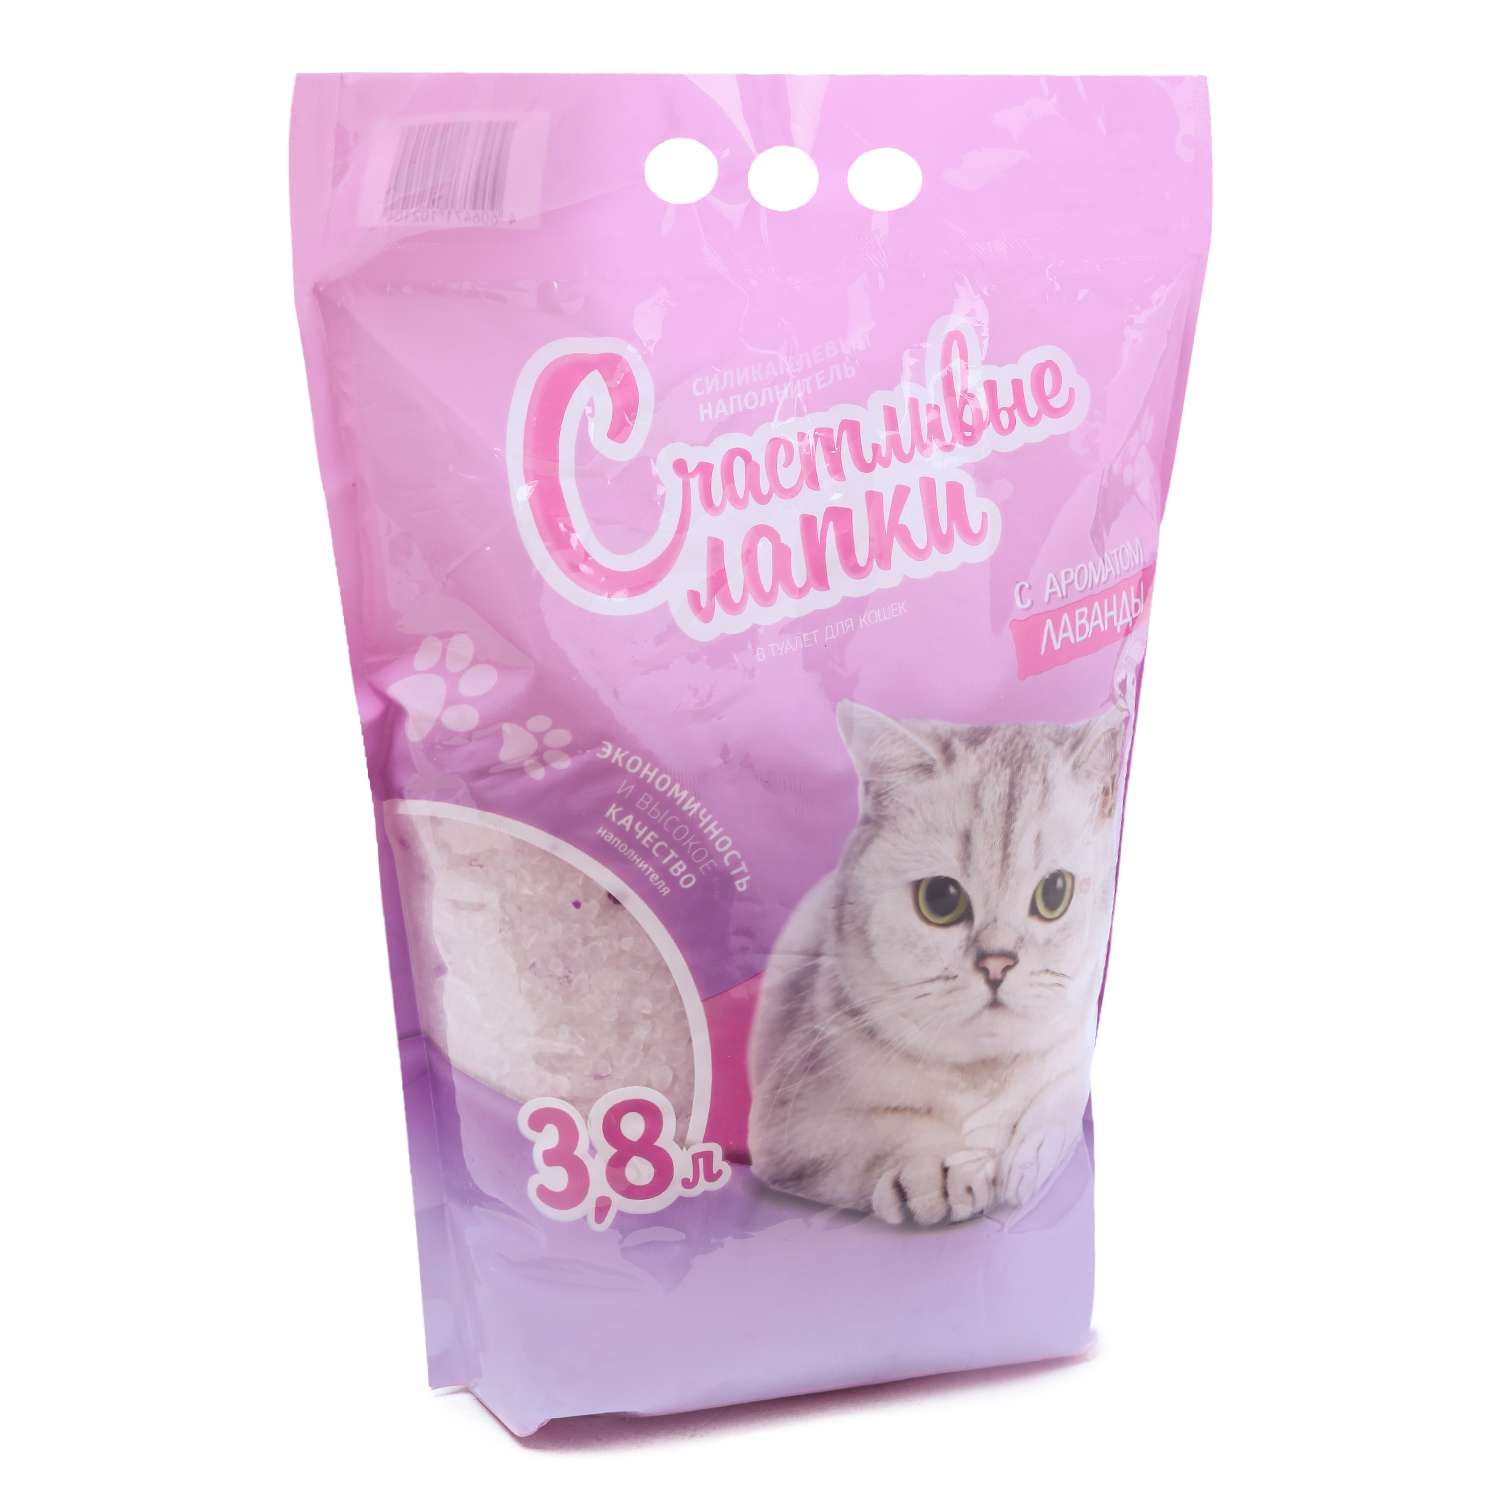 Наполнитель для кошек Счастливые лапки силикагелевый с ароматом лаванды 3.8л - фото 1